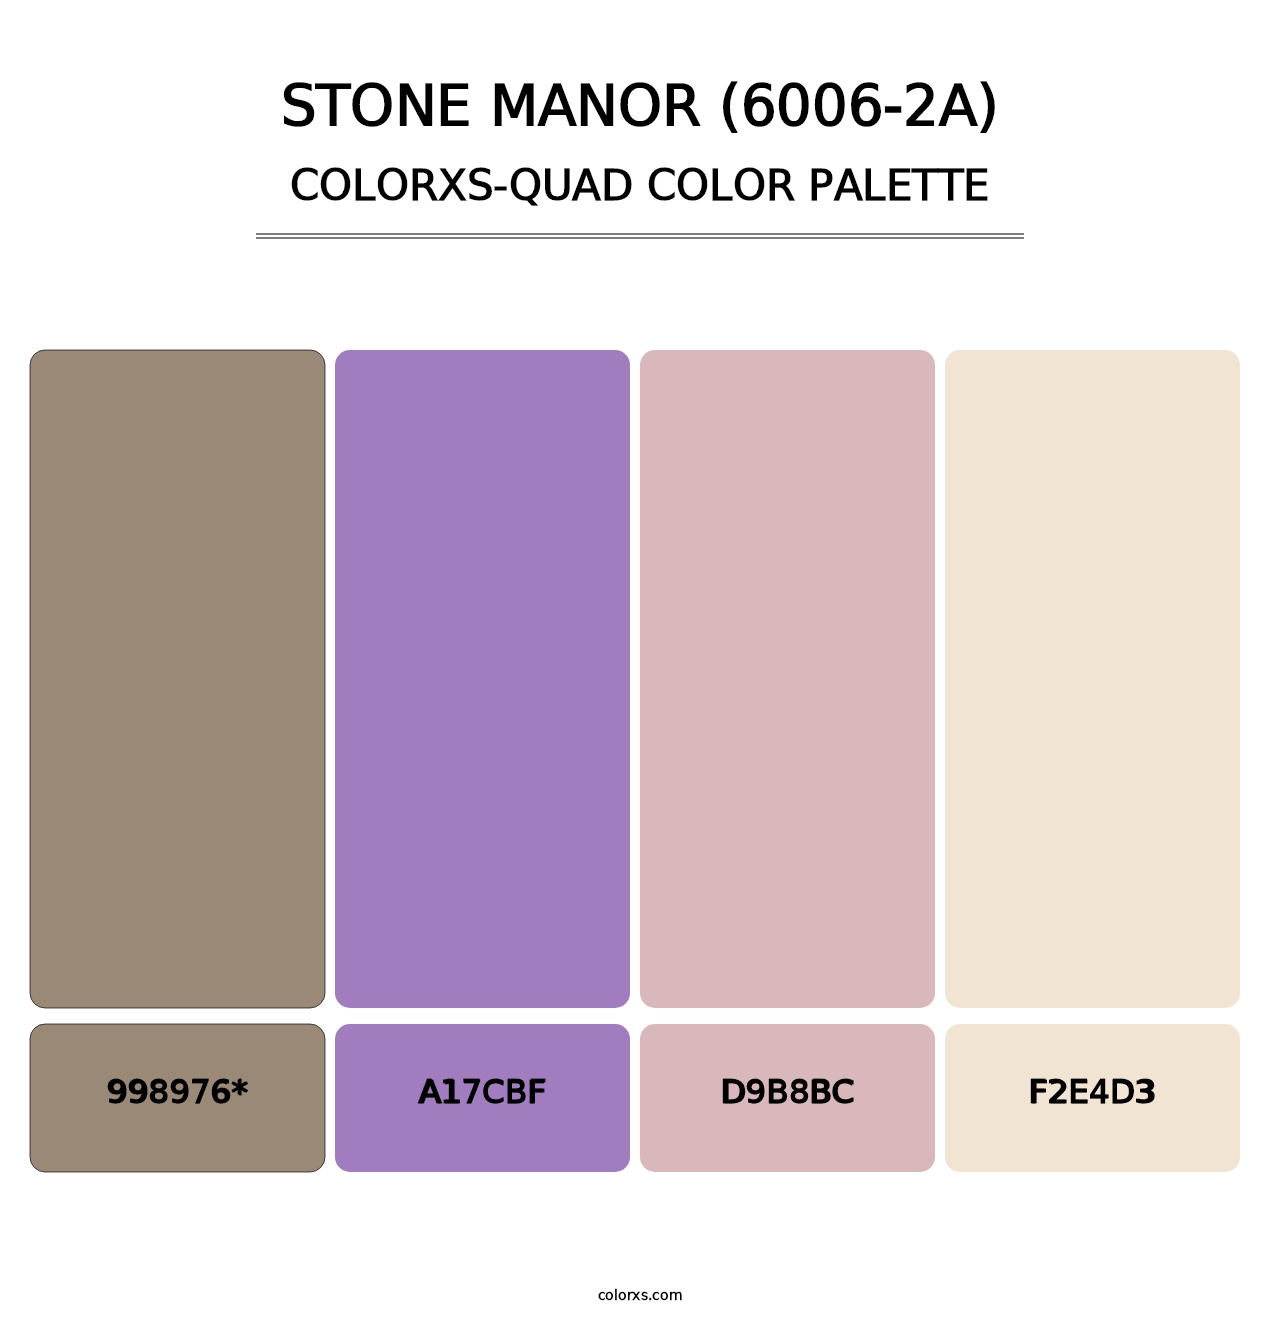 Stone Manor (6006-2A) - Colorxs Quad Palette